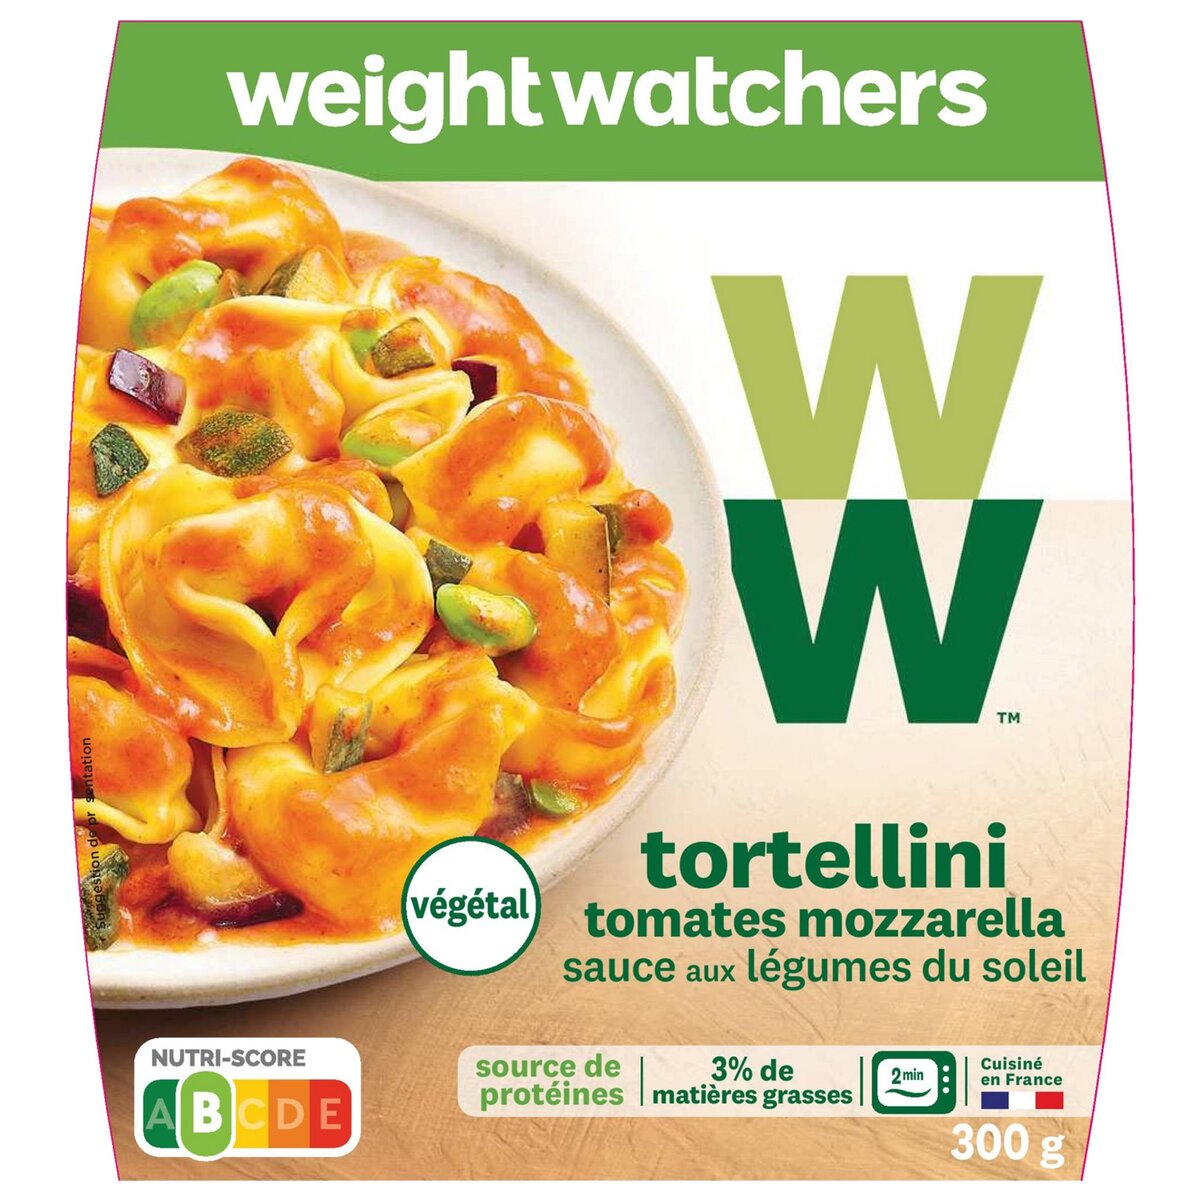 WEIGHT WATCHERS Totellini tomates mozzarella et sauce aux légumes 1 portion 300g